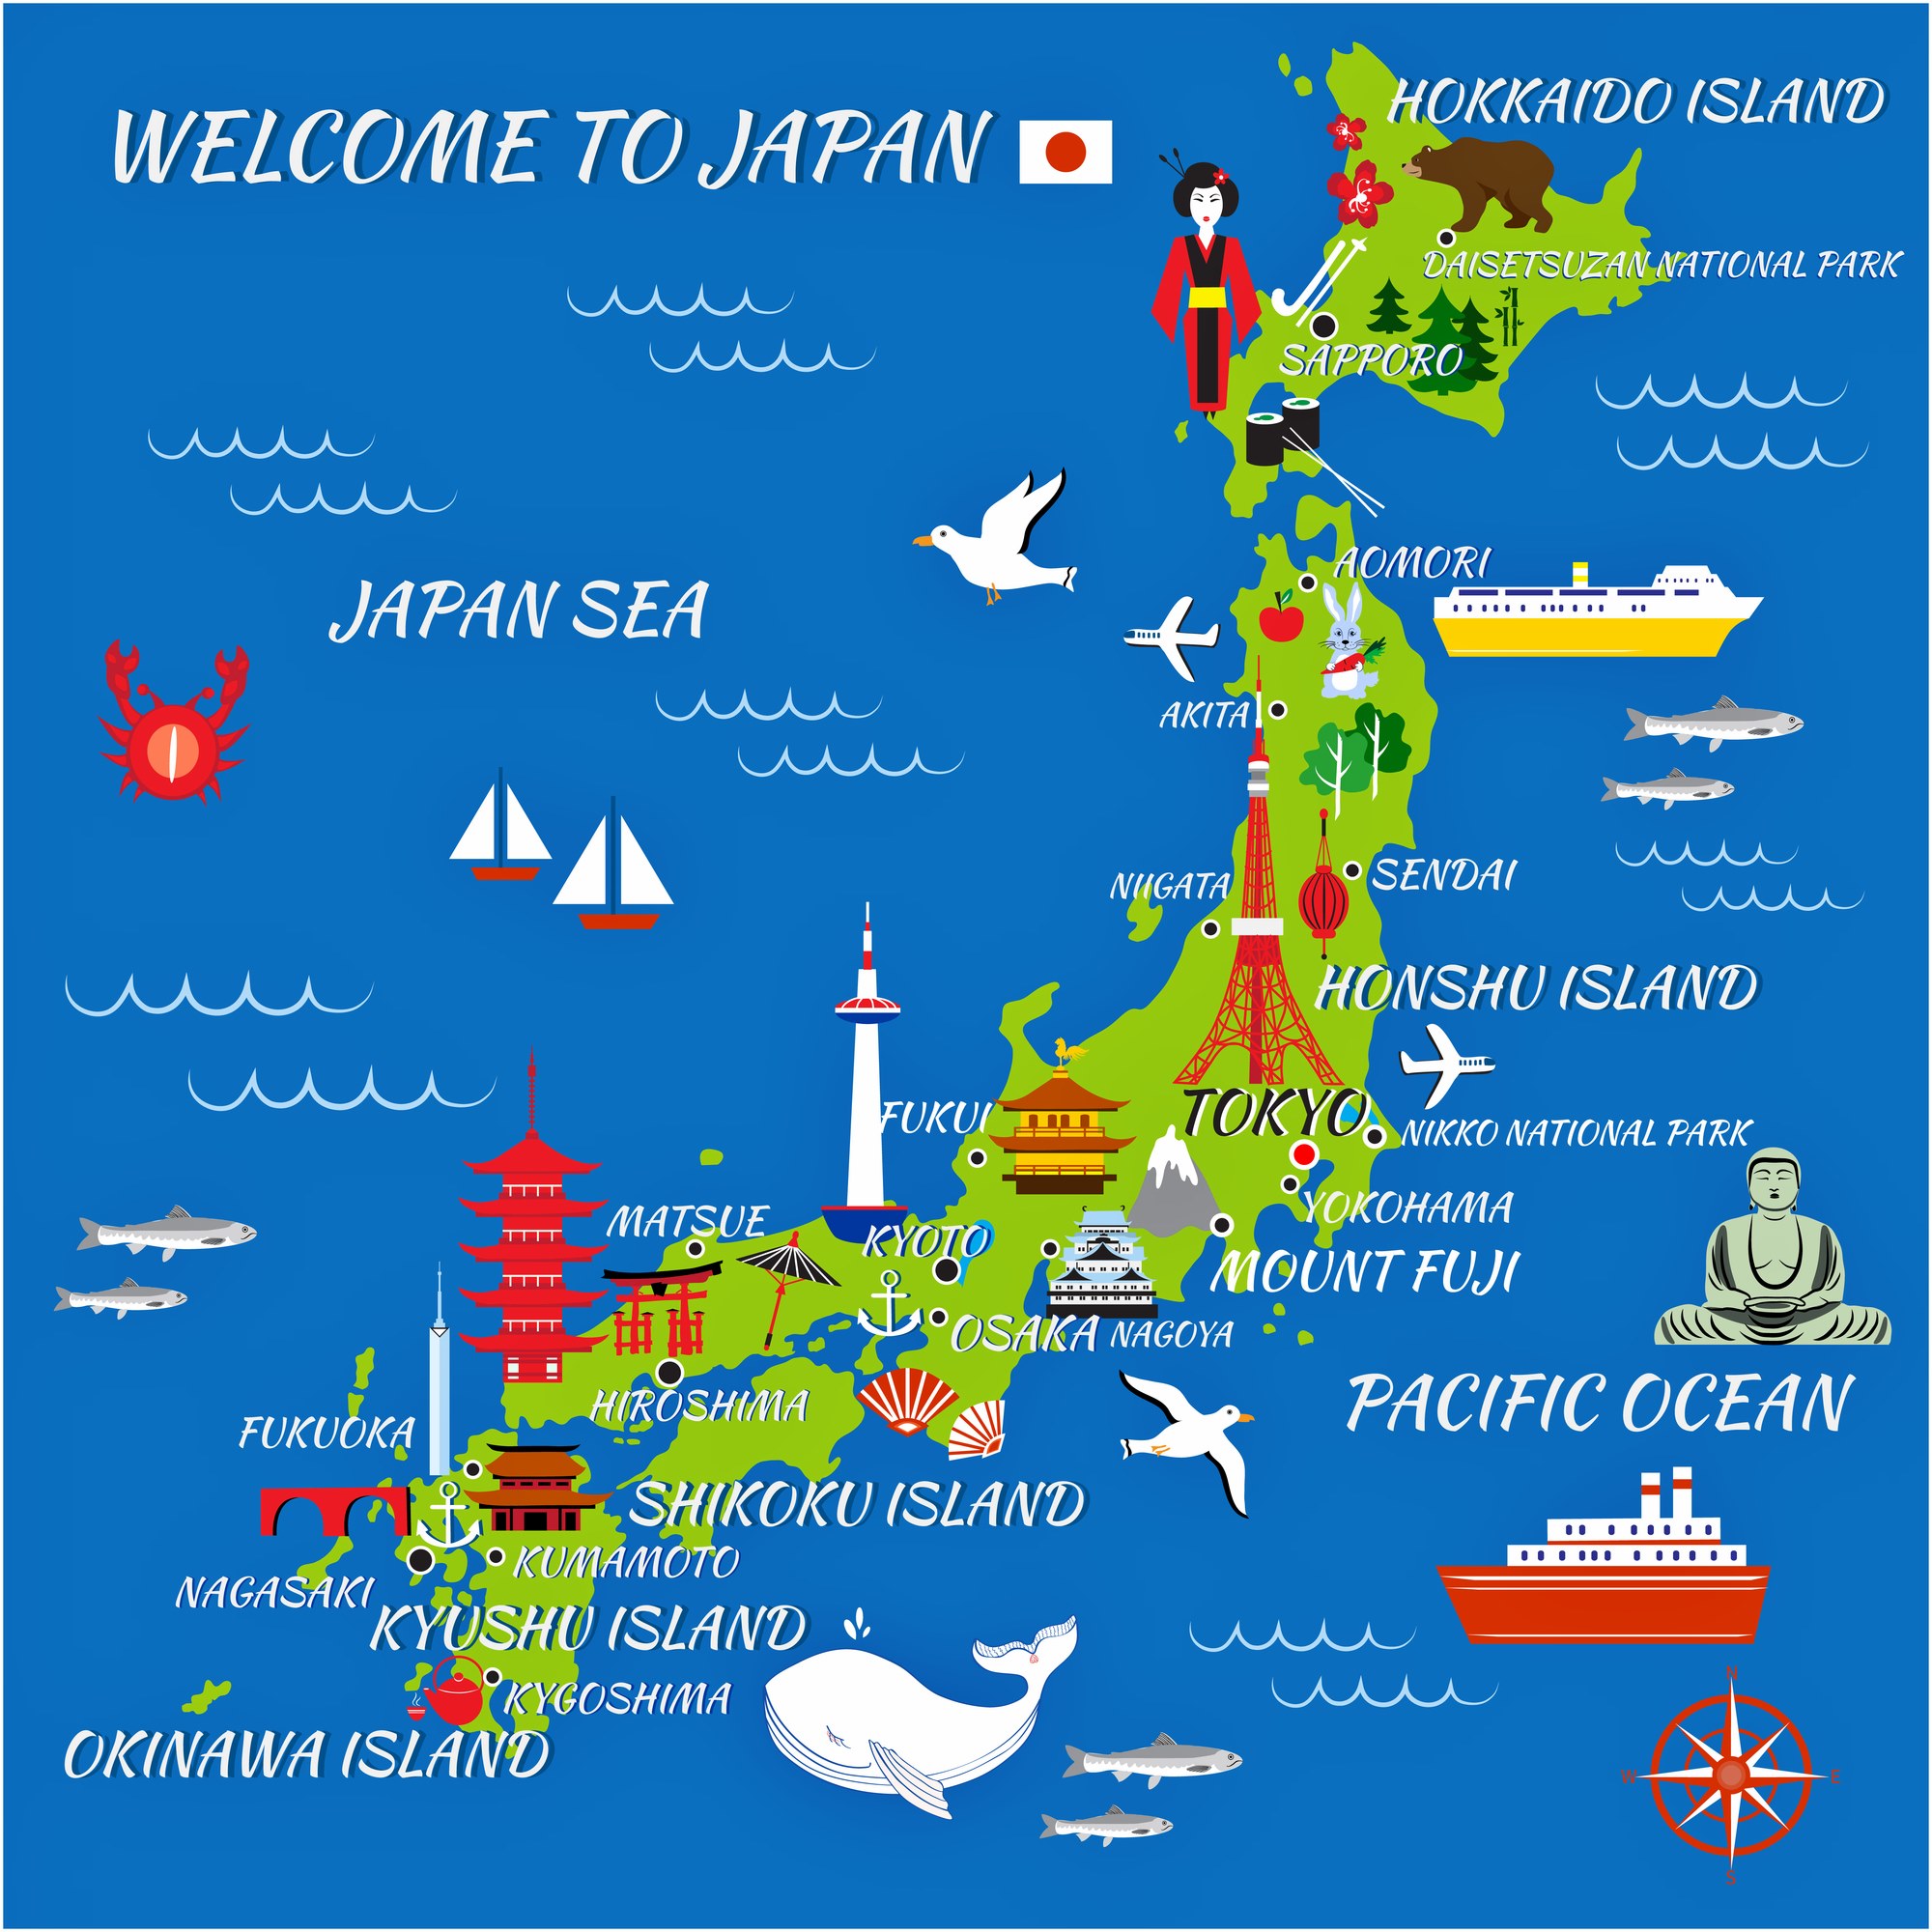 plan to visit japan